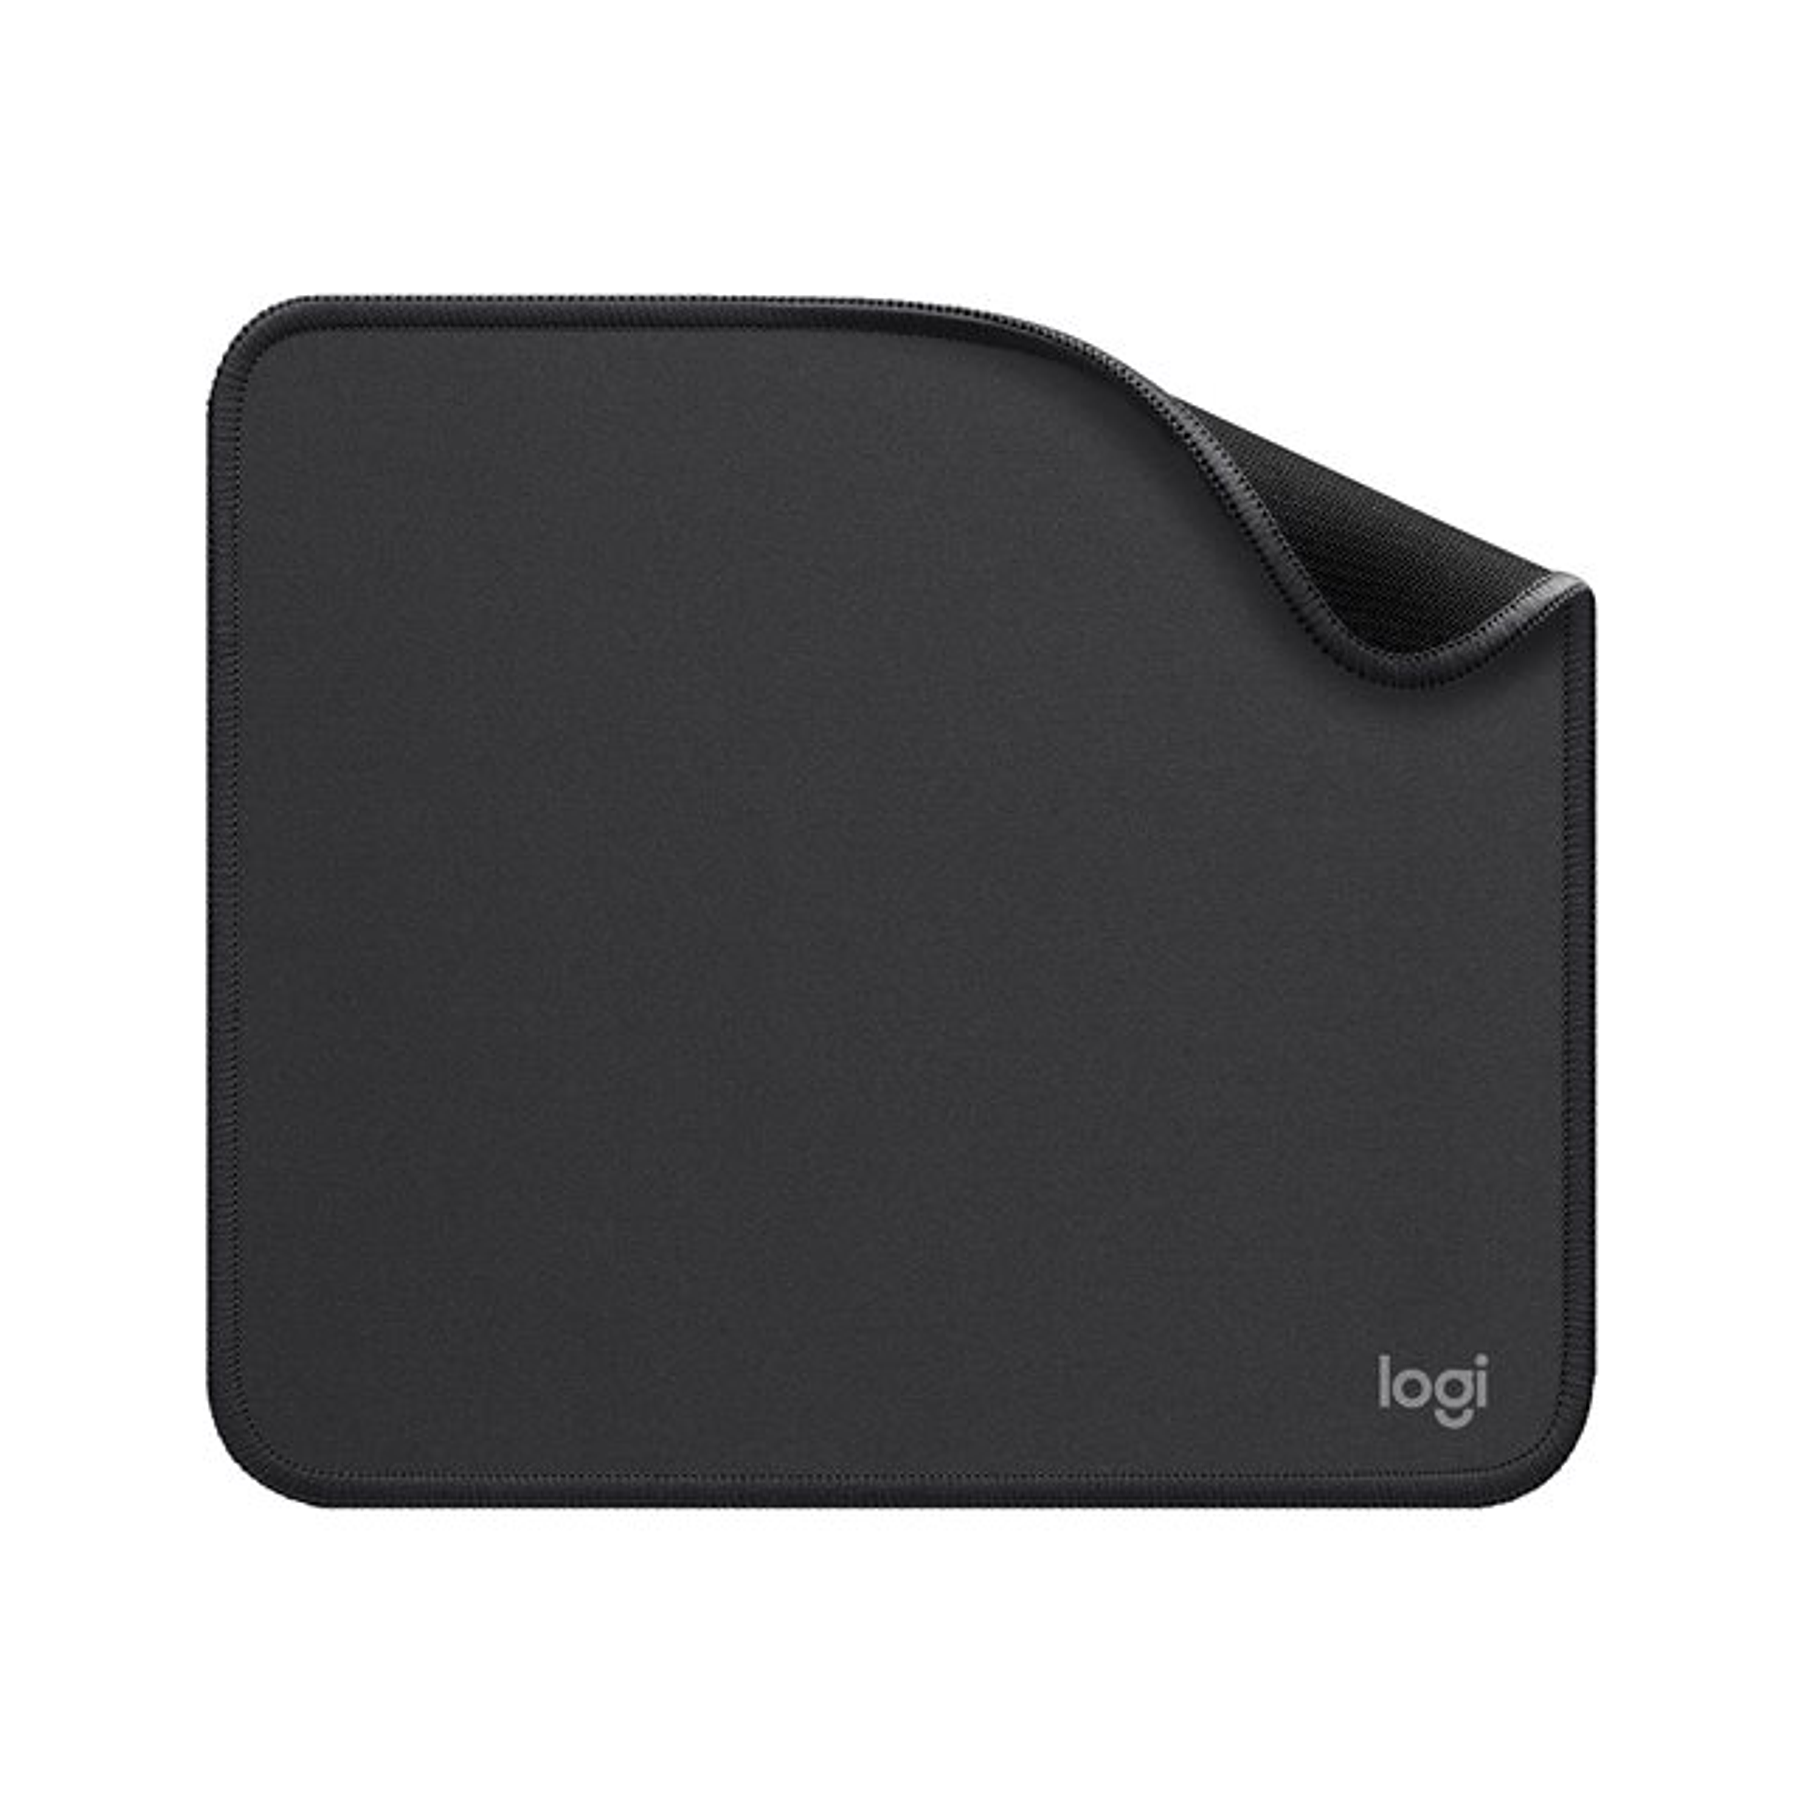 Logitech Mouse Pad Studios Series Color Negro